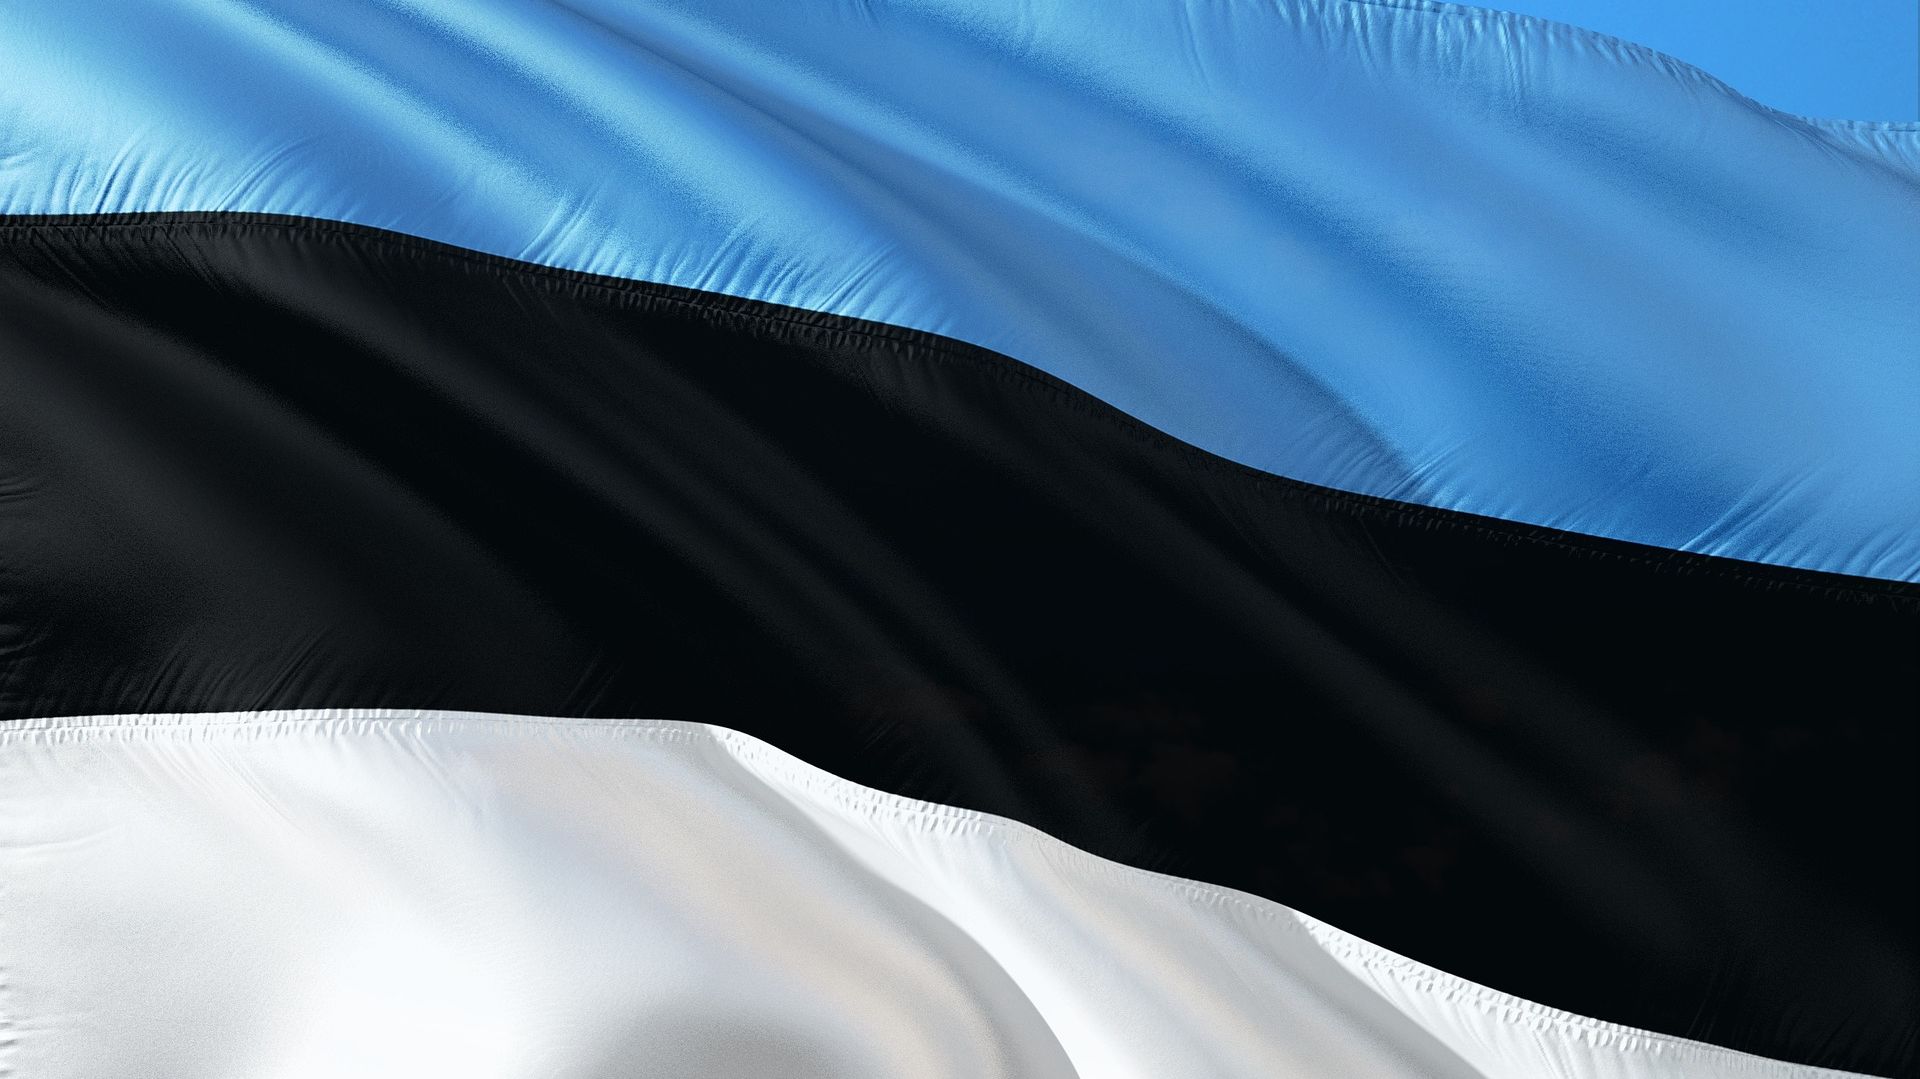 Premier Estonii Kaja Kallas ustąpi ze stanowiska w lipcu - poinformowało ugrupowanie, do którego należy szefowa rządu. Rezygnacja związana jest z tym, że prawdopodobnie jesienią rozpocznie pracę jako szefowa unijnej dyplomacji.